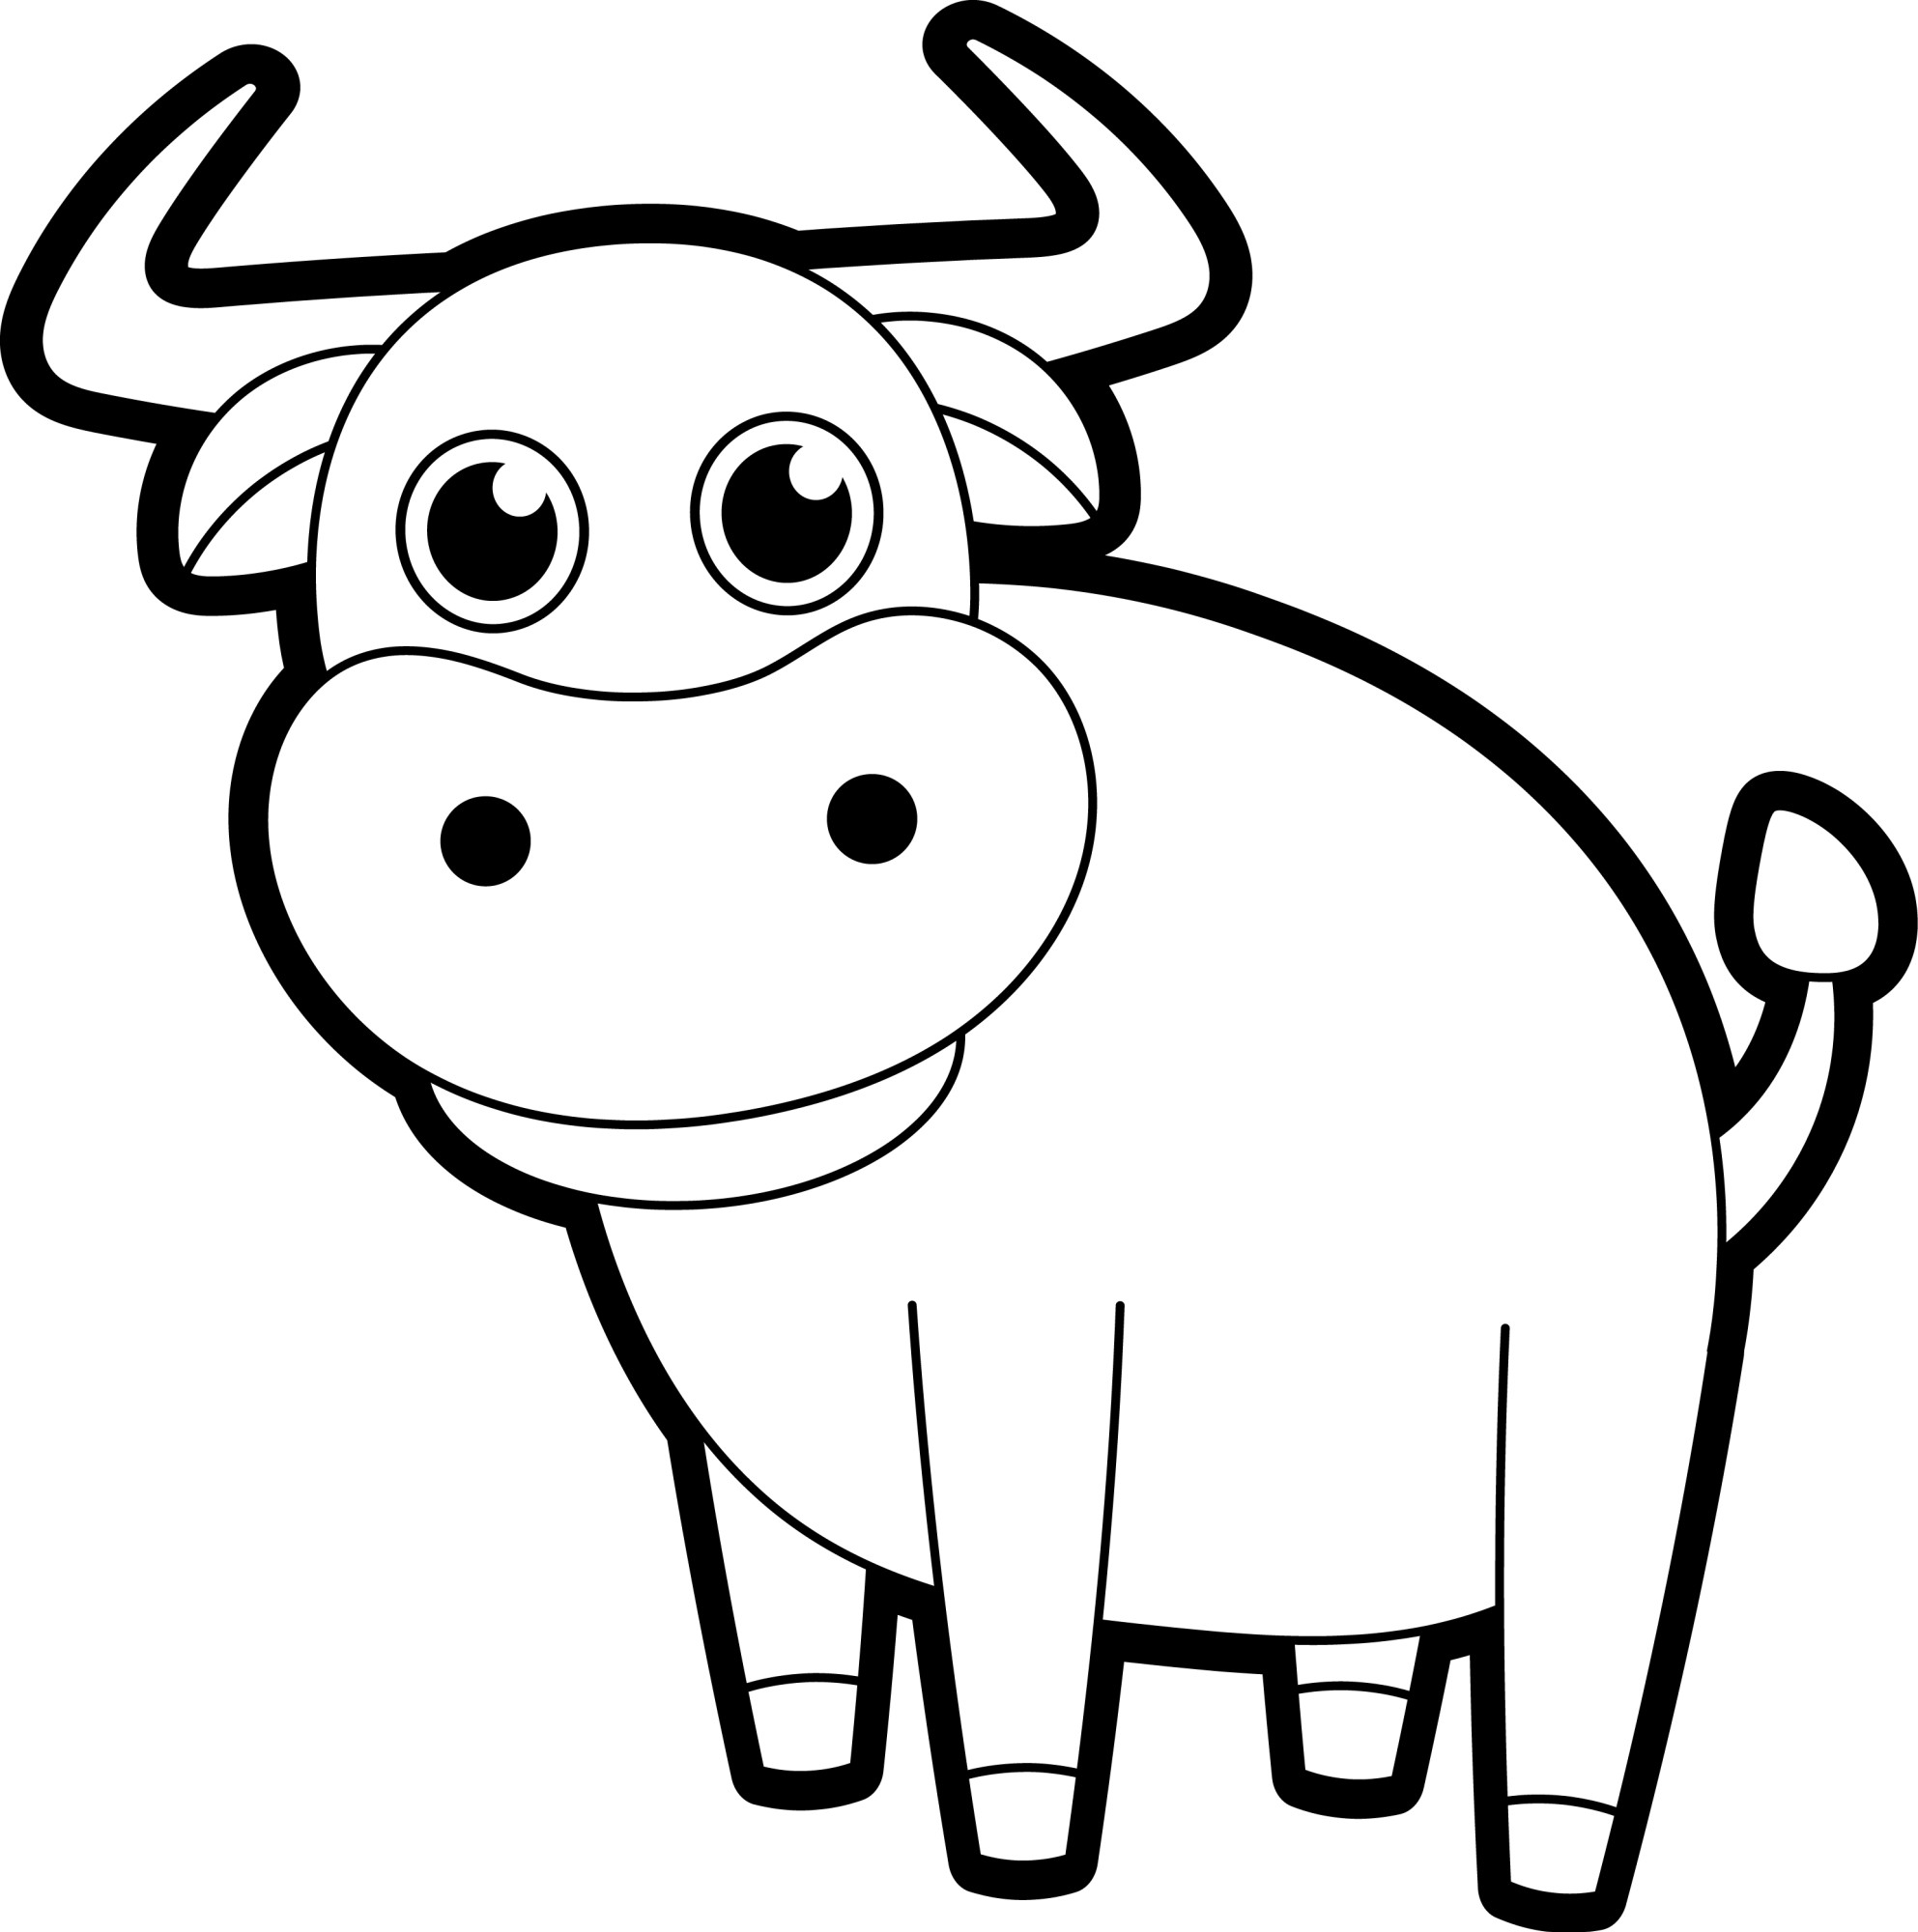 Раскраска для детей: мультяшный бык с большими рогами